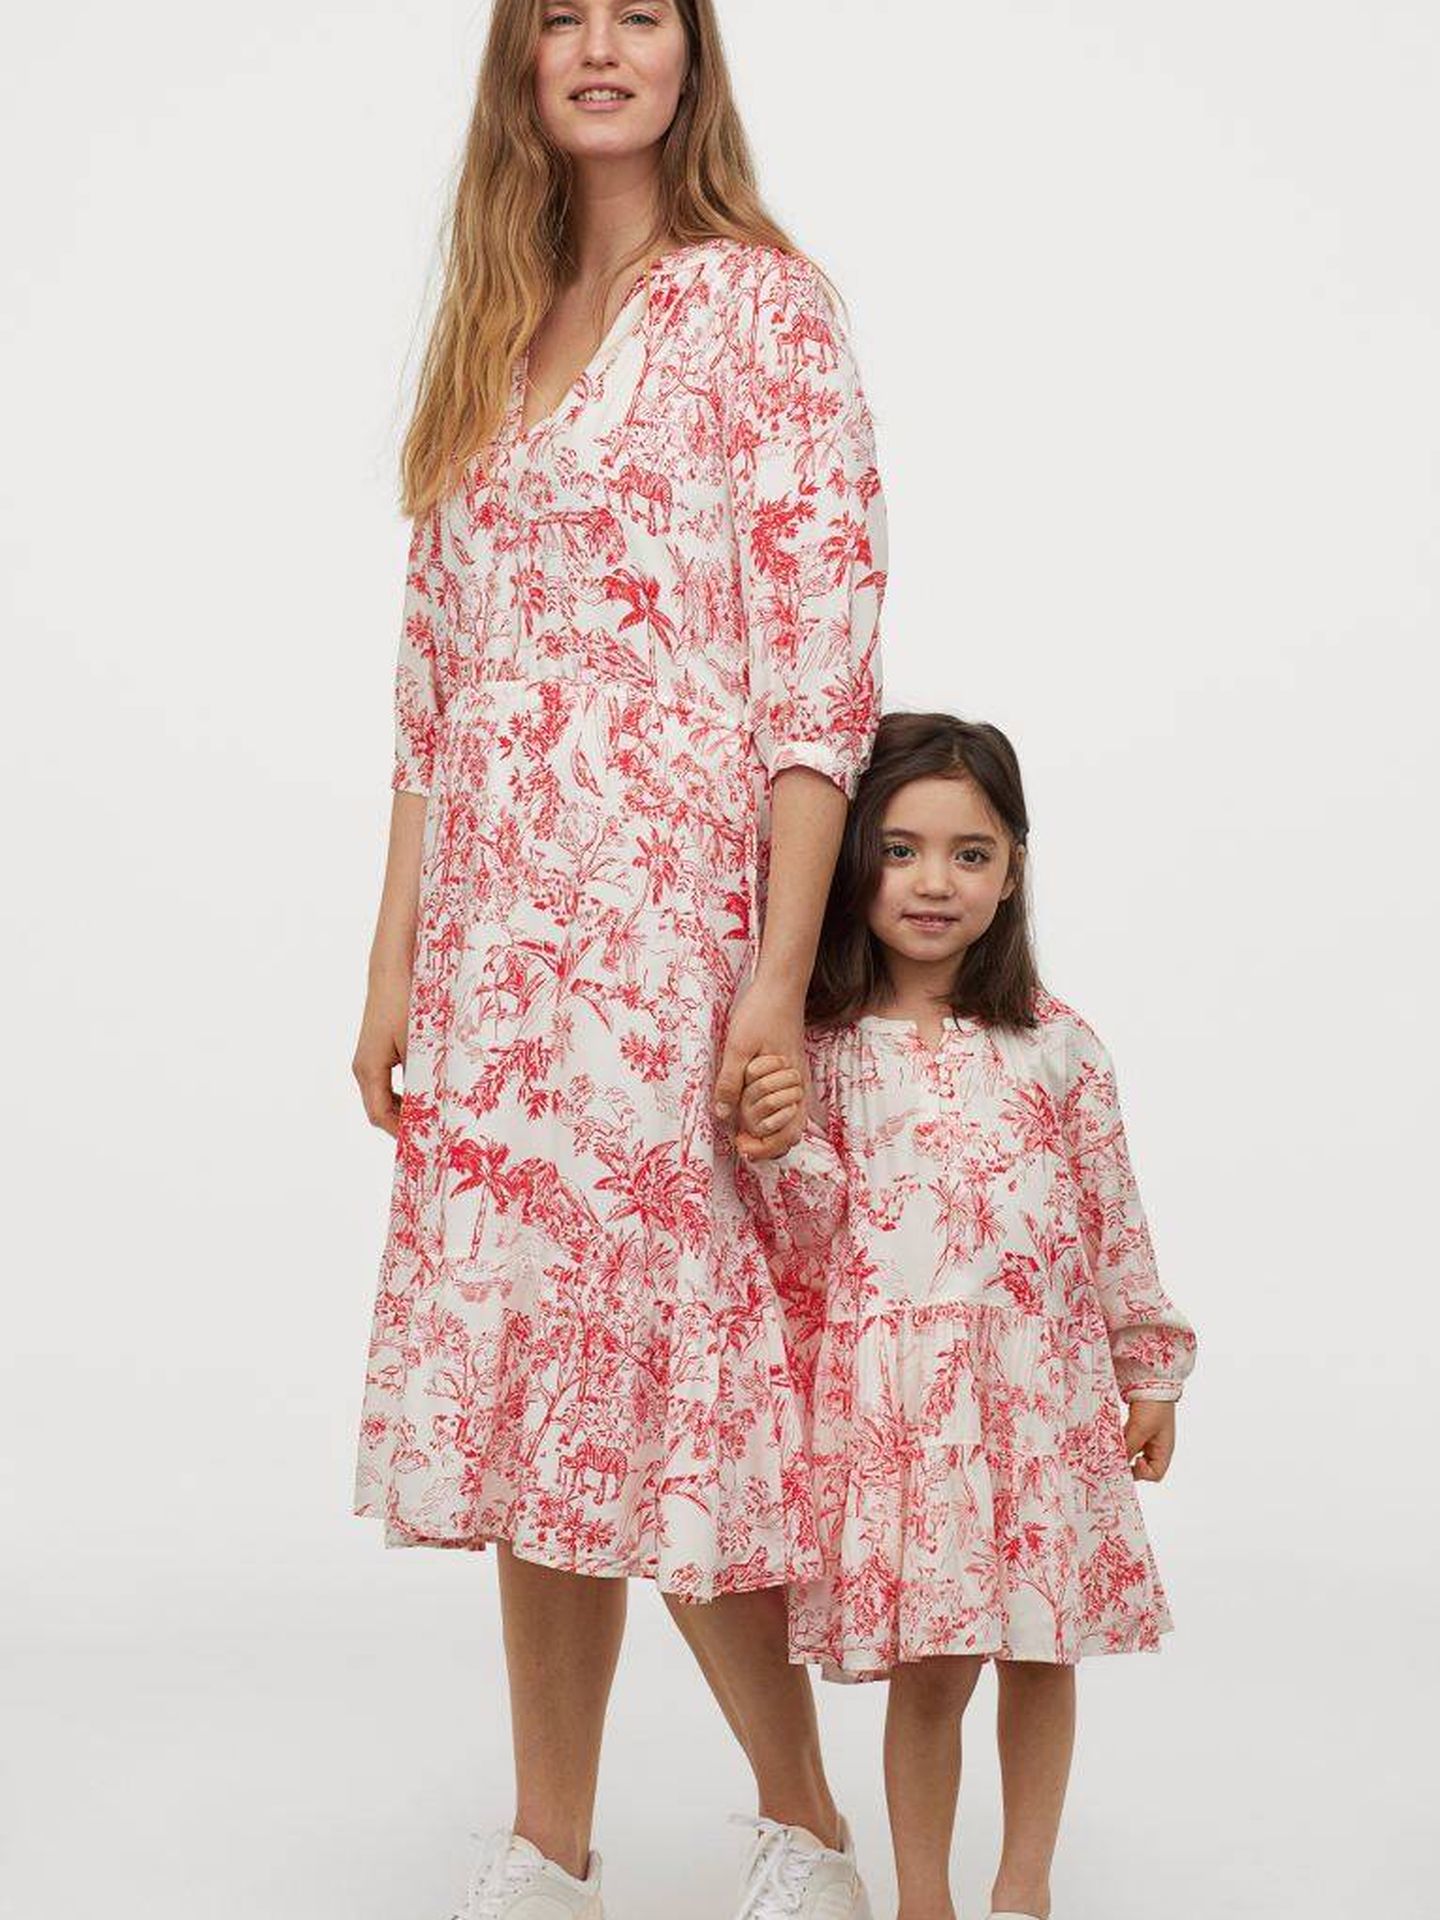 H&M quiere que celebres el día de la madre vestido a juego con tu